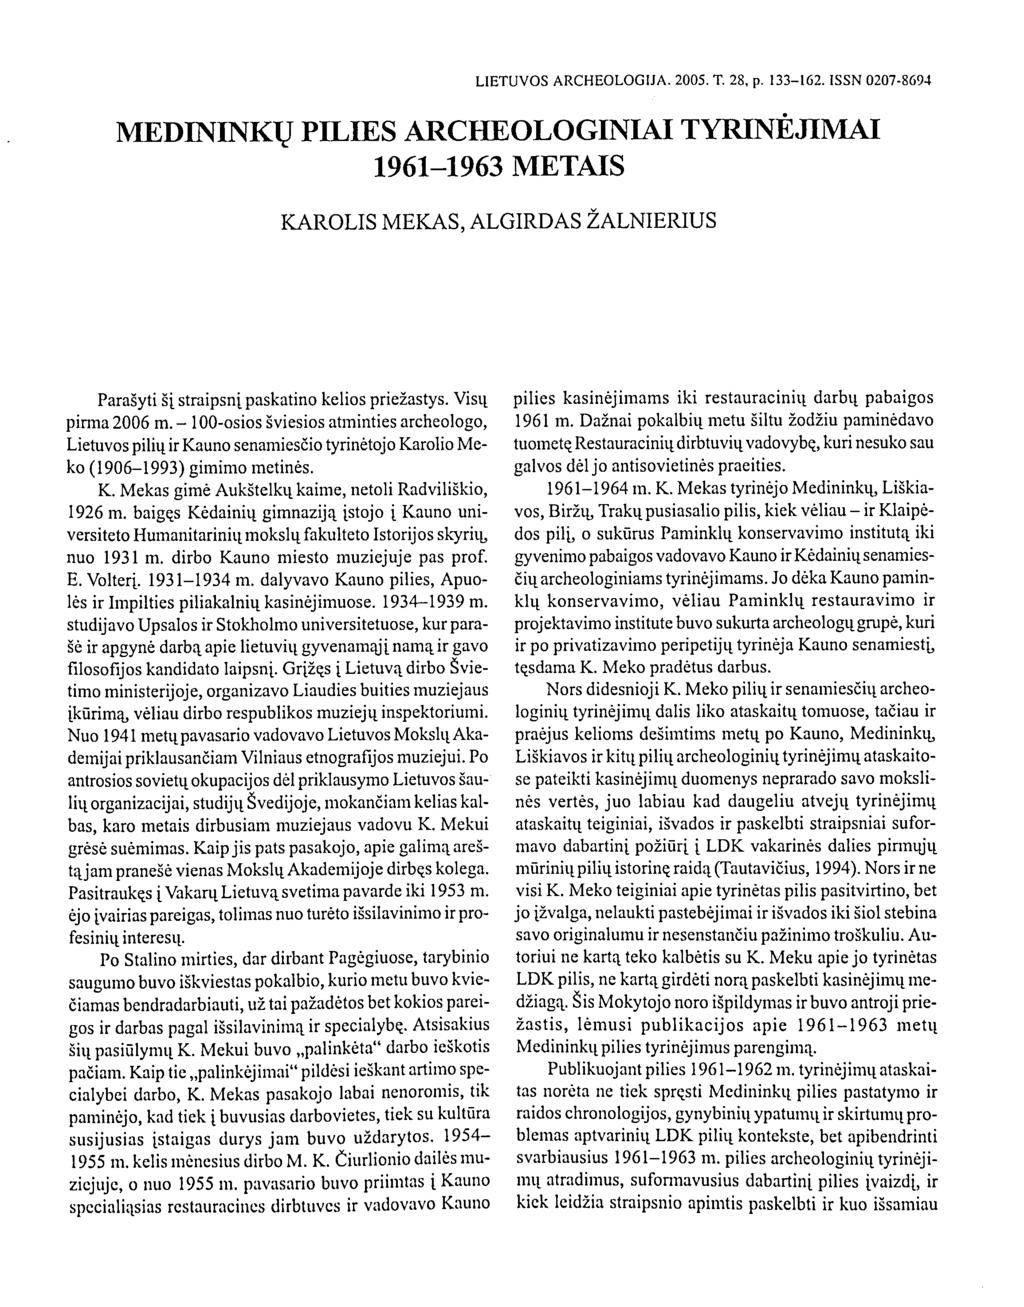 LIETUVOS ARCHEOLOGIJA. 2005. T. 28, p. 133-162.